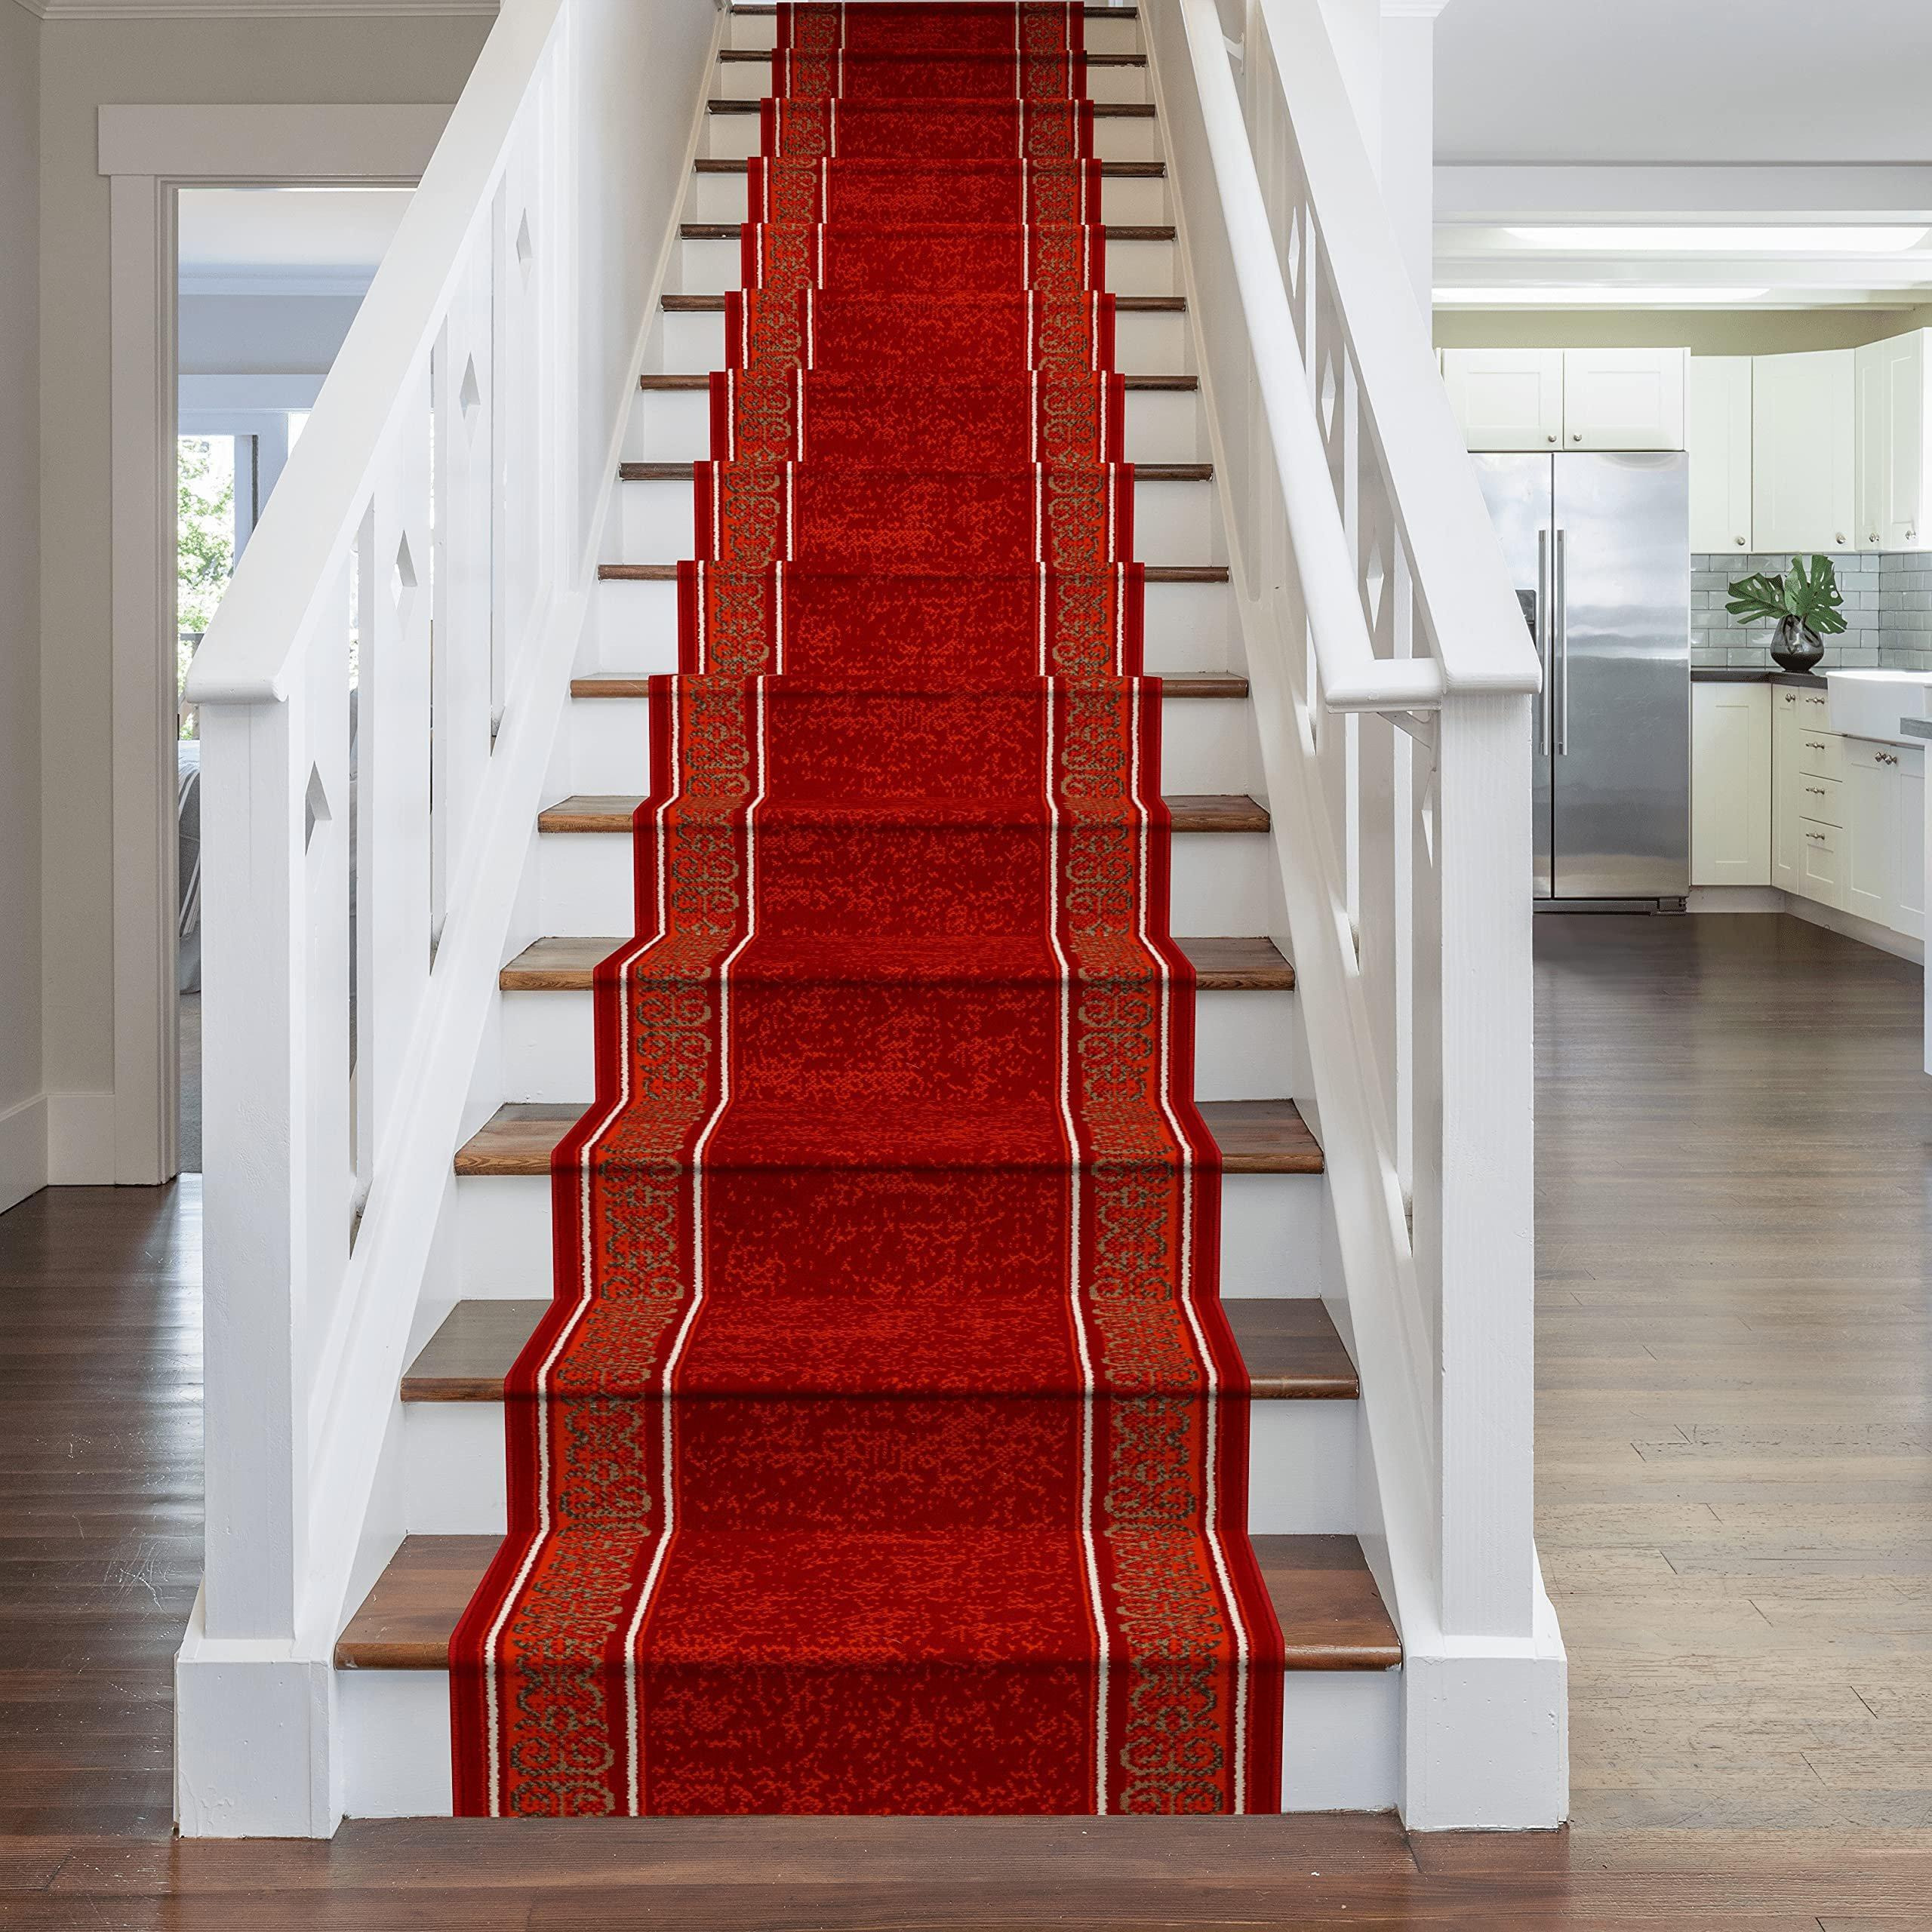 Red Tribal Stair Carpet Runner - image 1